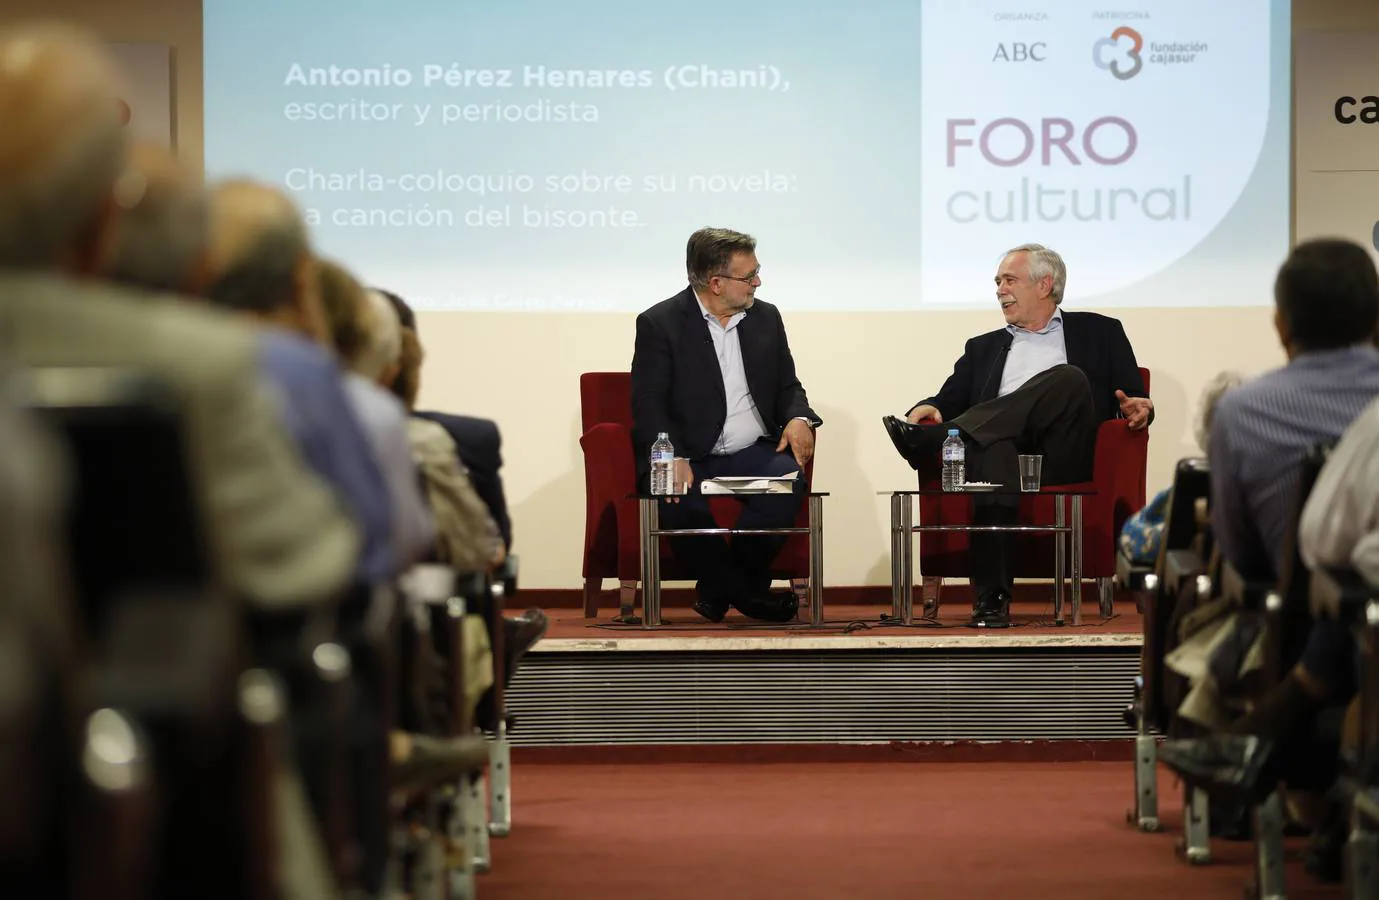 El Foro Cultural de ABC Córdoba con Antonio Pérez Henares (Chani), en imágenes